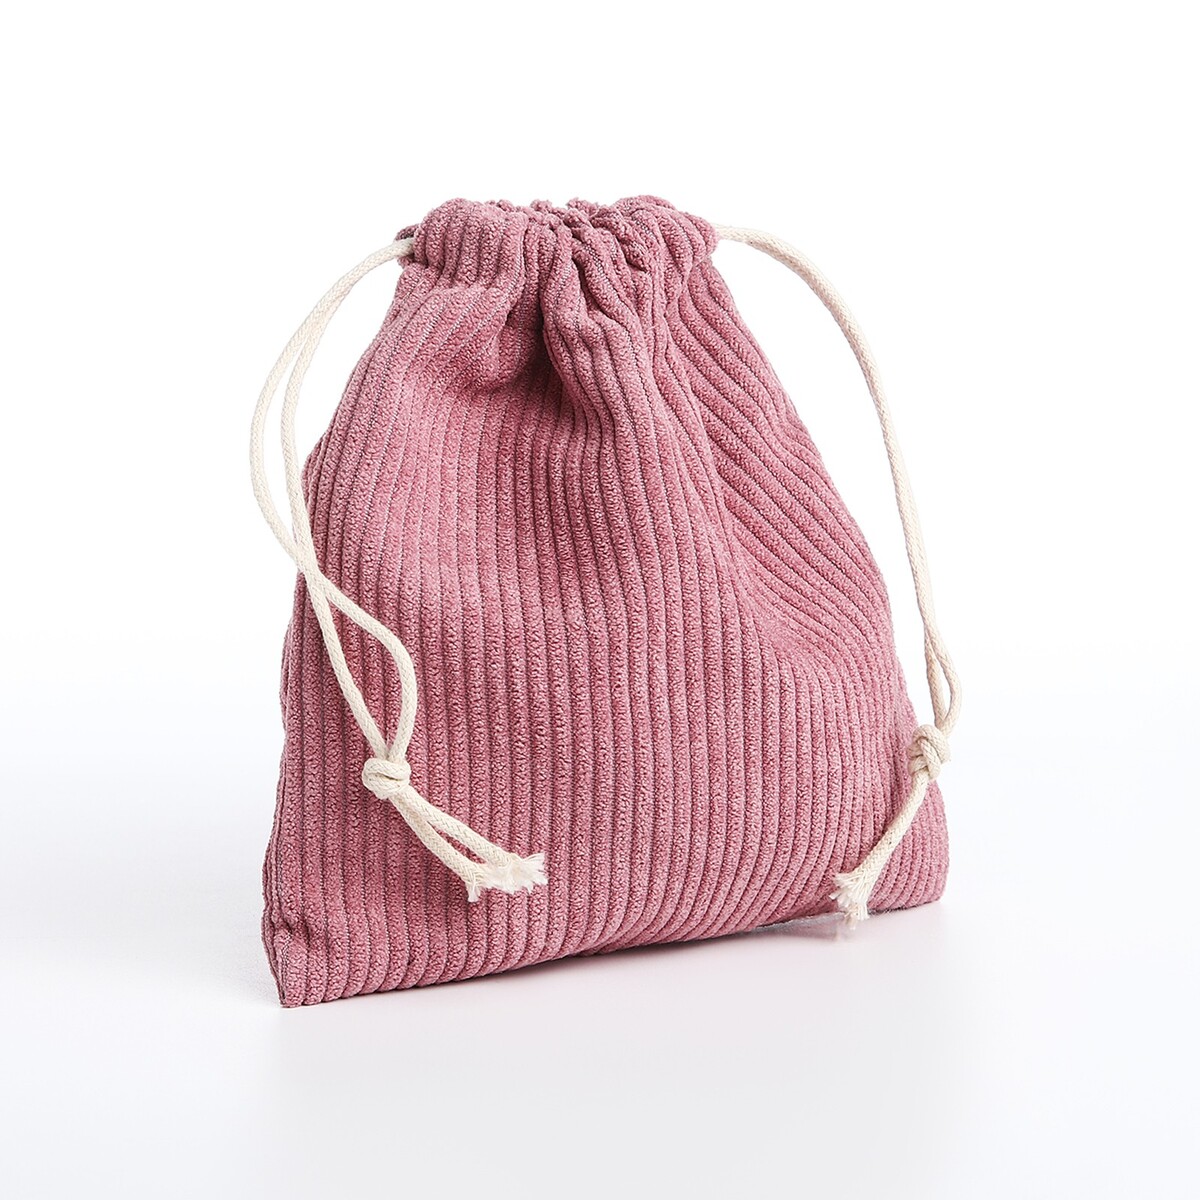 Косметичка - мешок с завязками, цвет сиренево-розовый косметичка мешок с завязками горчичный